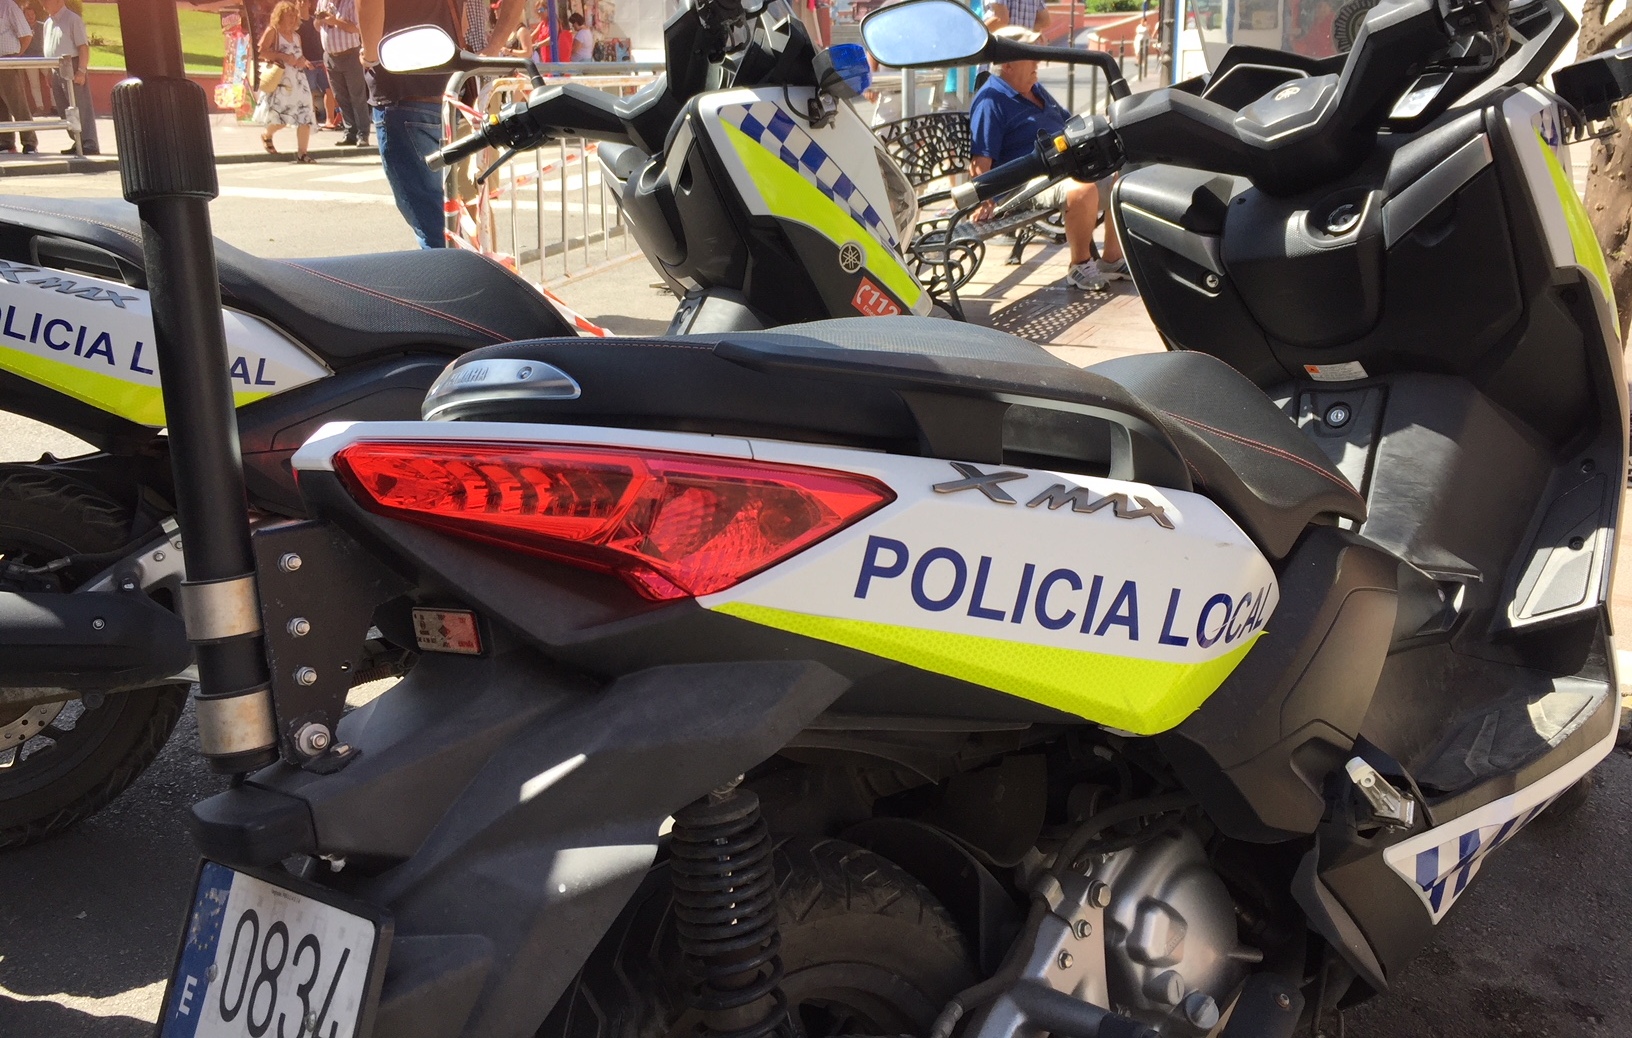 Policia local logo motos